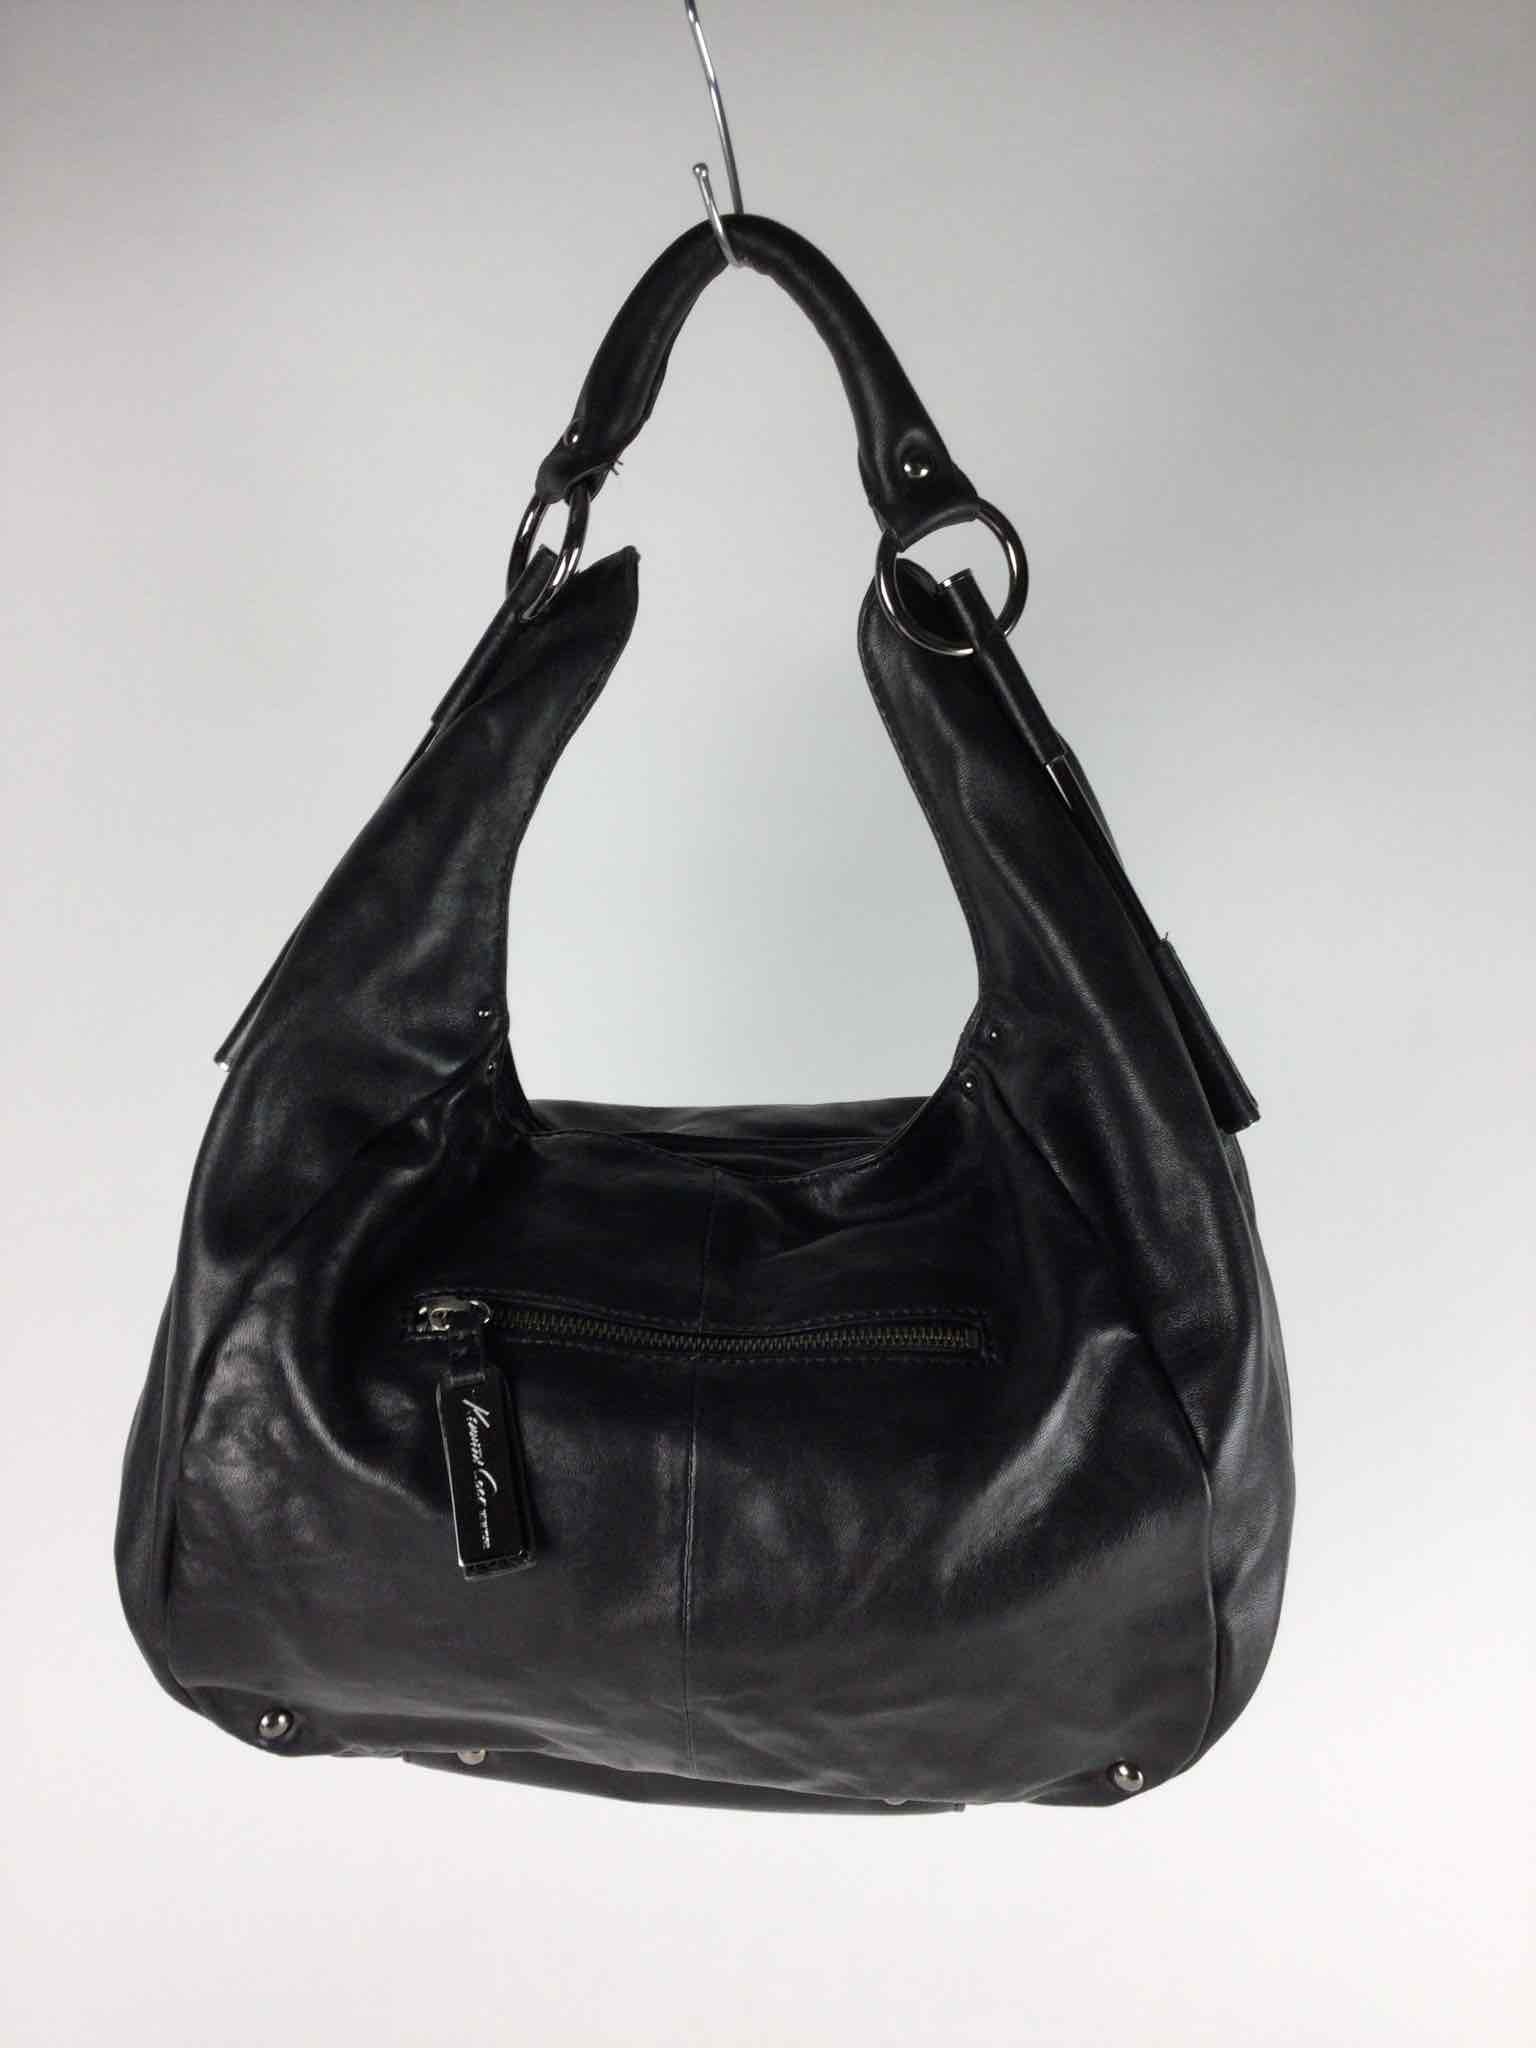 Kenneth Cole Black Leather Studded Accent Hobo Shoulder Bag $278 | eBay